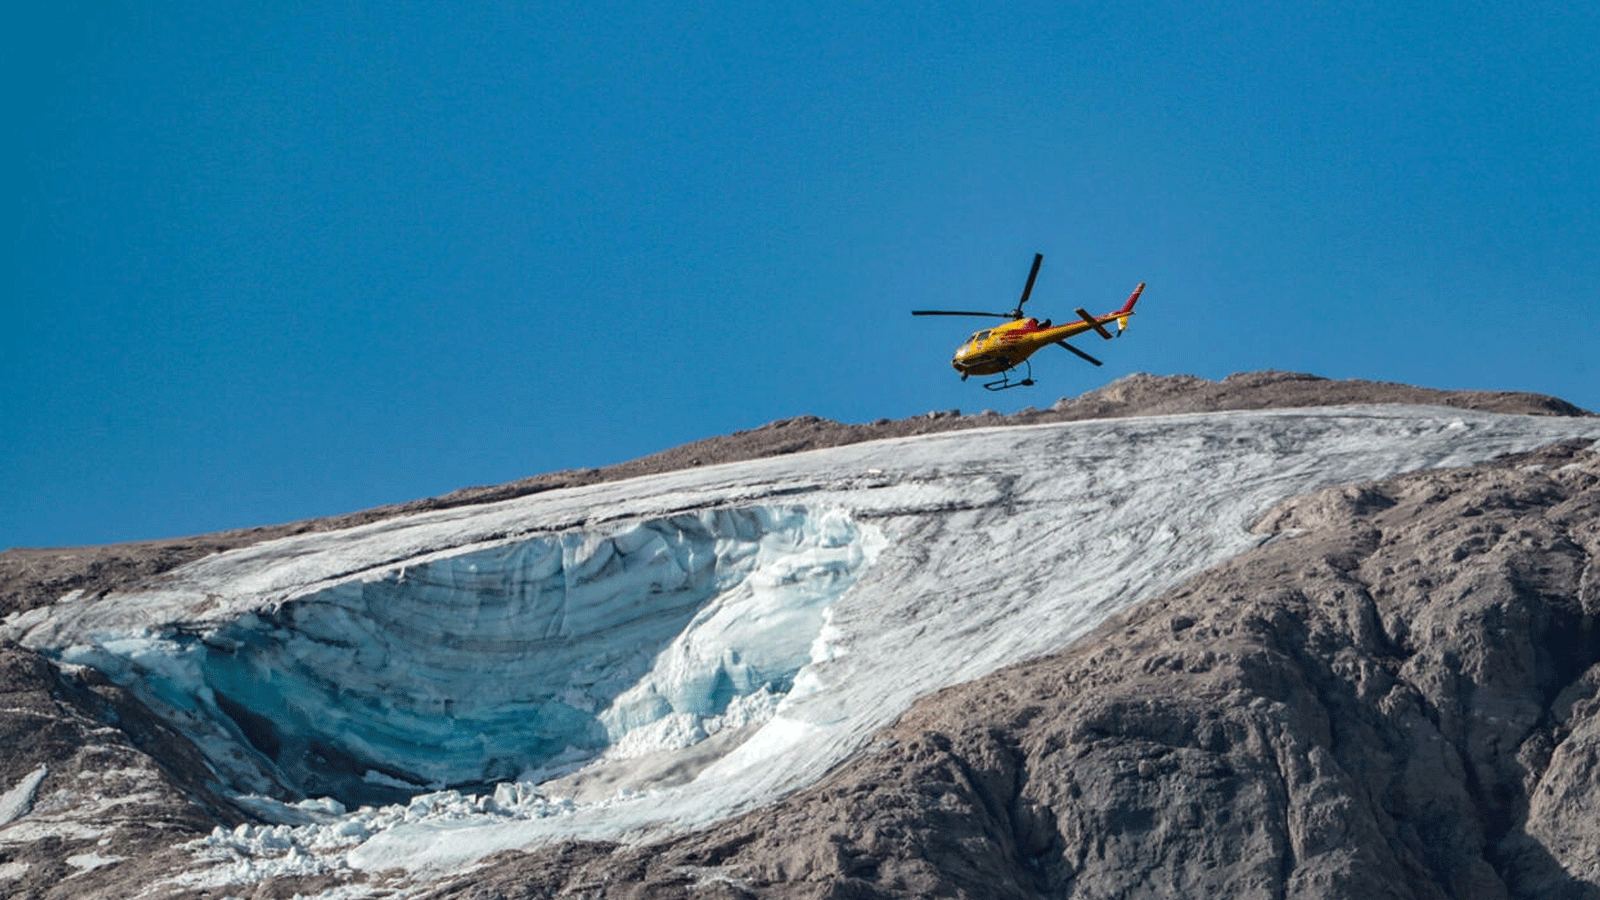 جزء من أكبر أنهار جبال الألب الجليدية في إيطاليا انحسر يوم الأحد الماضي في كارثة ألقى المسؤولون باللوم فيها على تغيّر المناخ